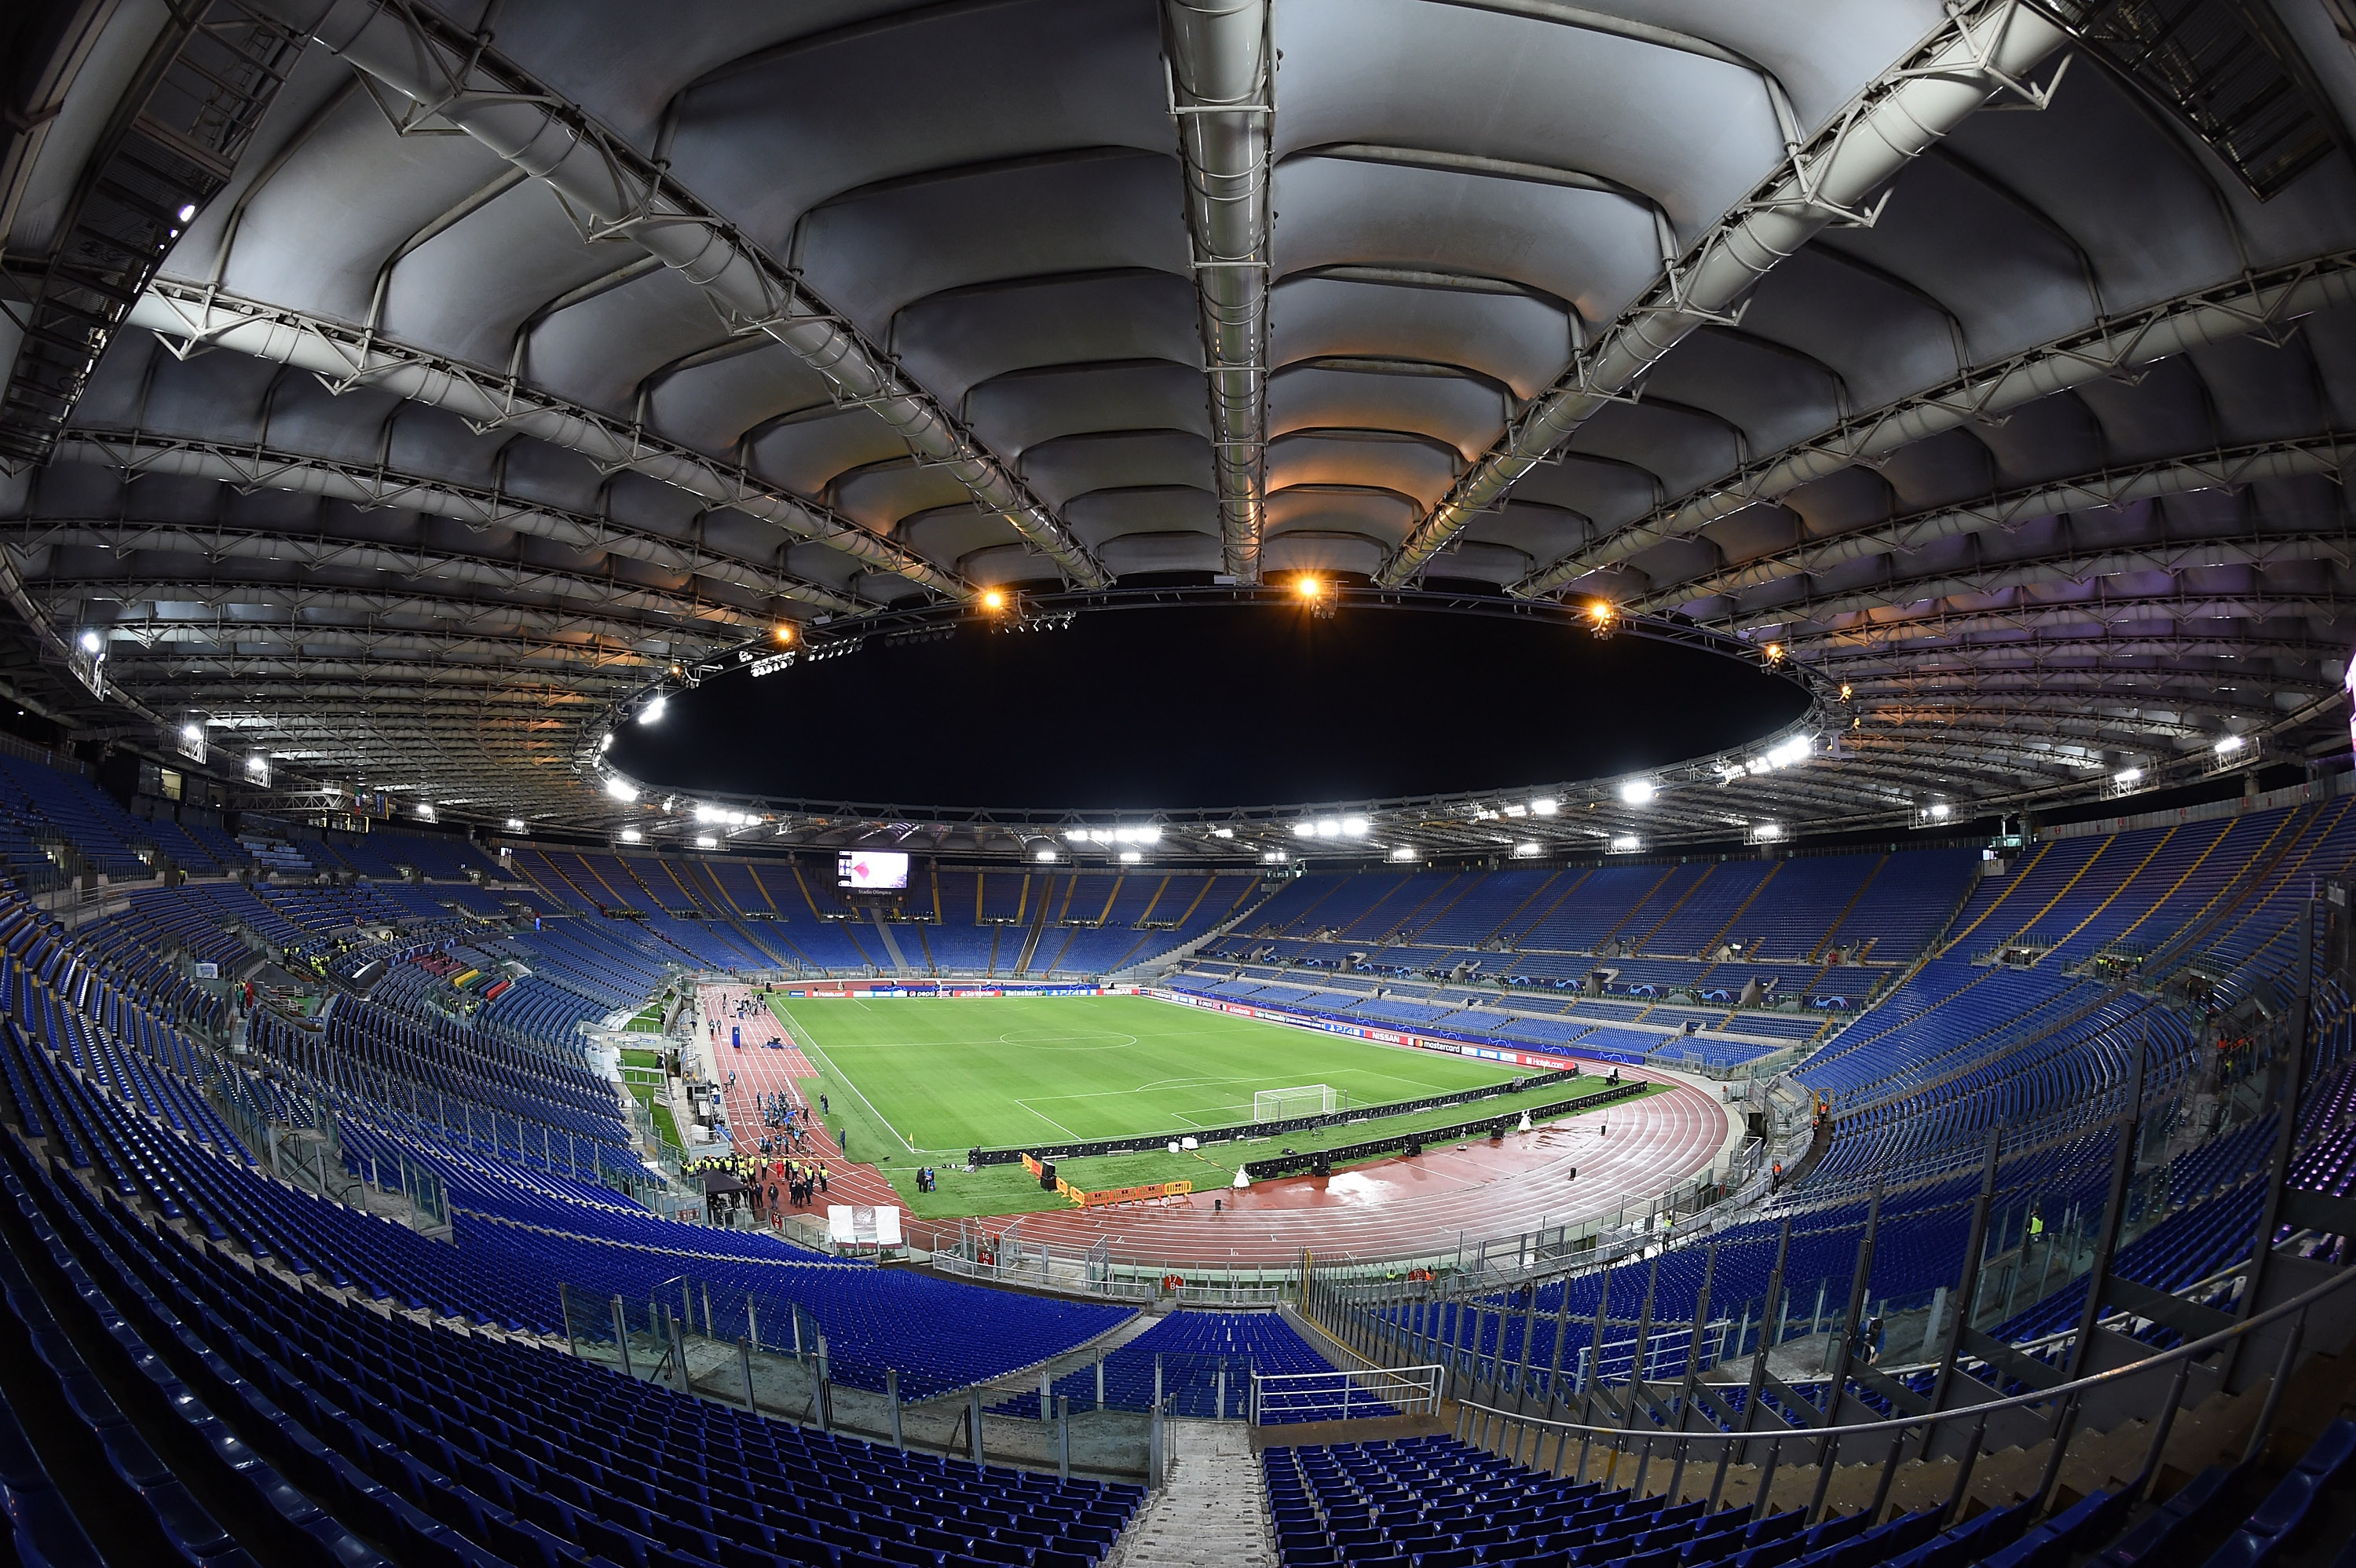 Олимпико стадион. Рим стадион евро 2020. Стадион Олимпико Рим. Стадион: Олимпийский стадион Рим 2024. Олимпико стадион Рим трибуны пес 2020.